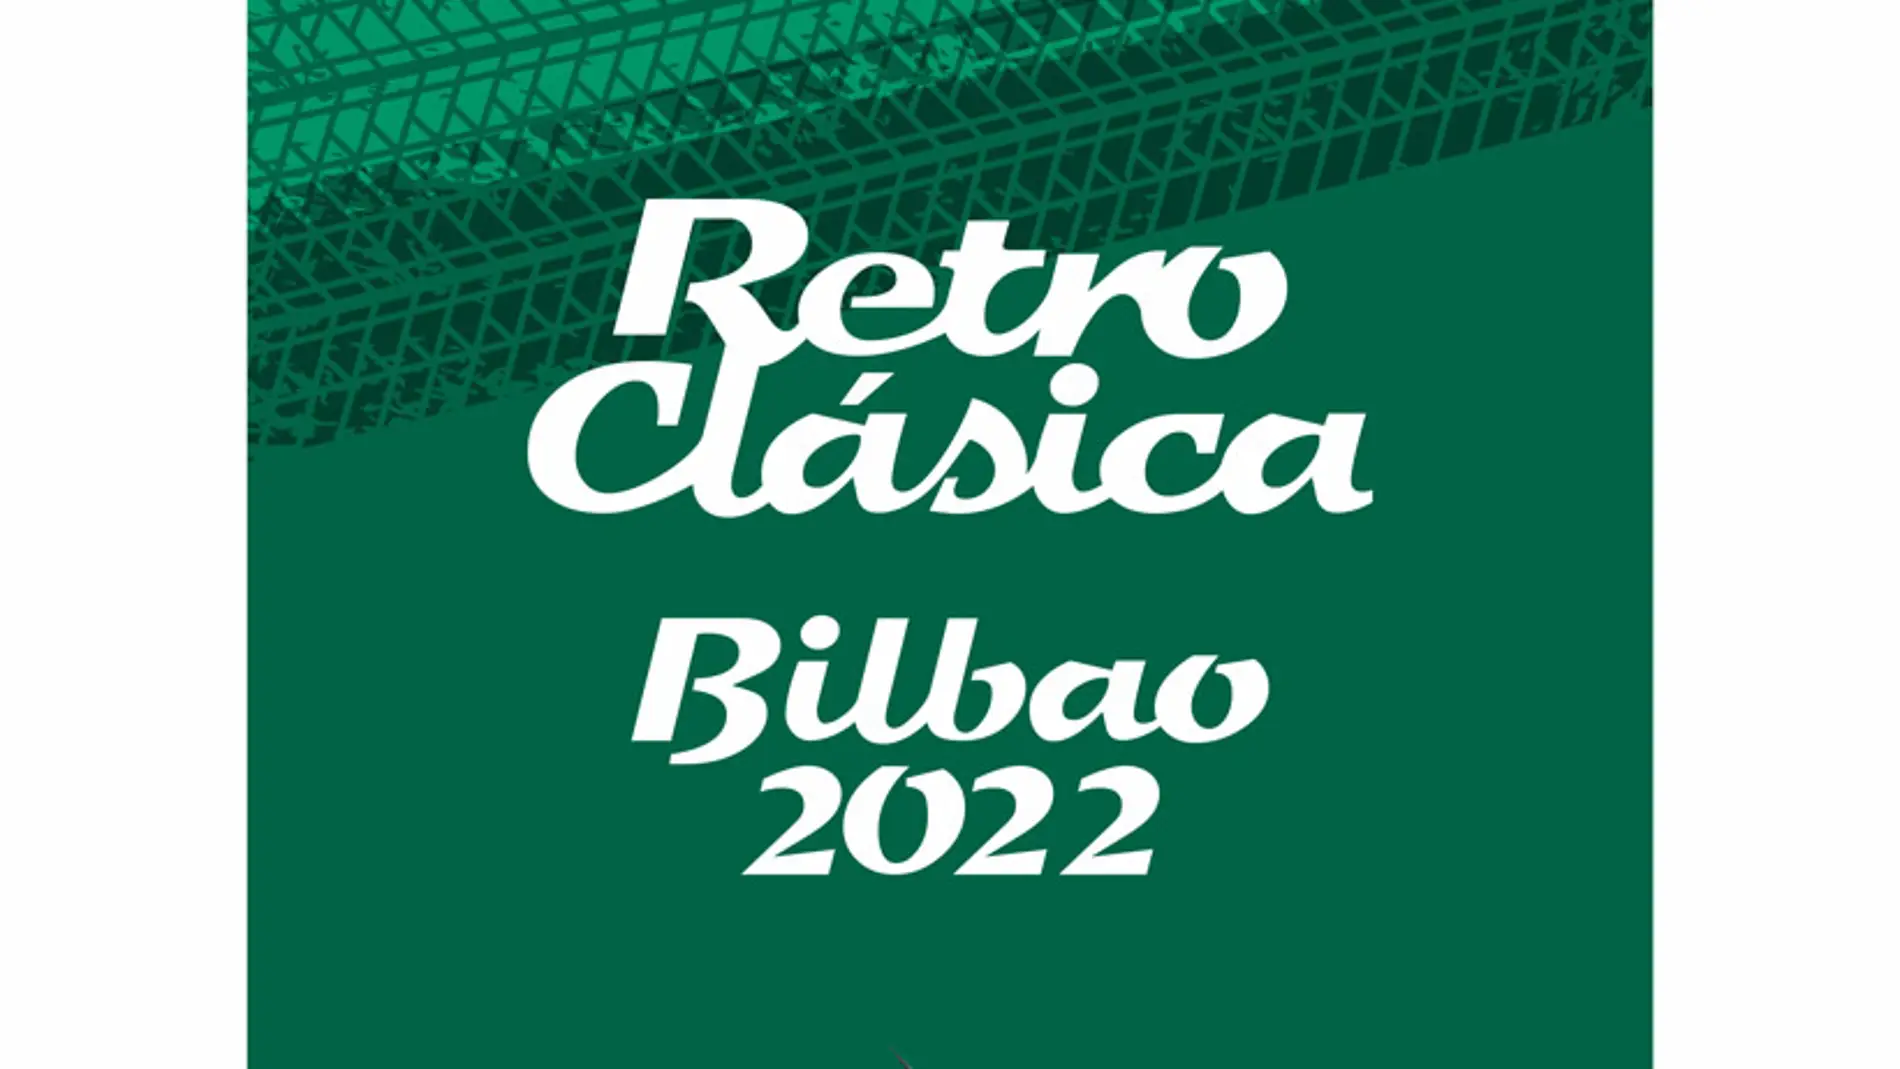 Retro Clásica Bilbao recupera su tradicional Motorshow